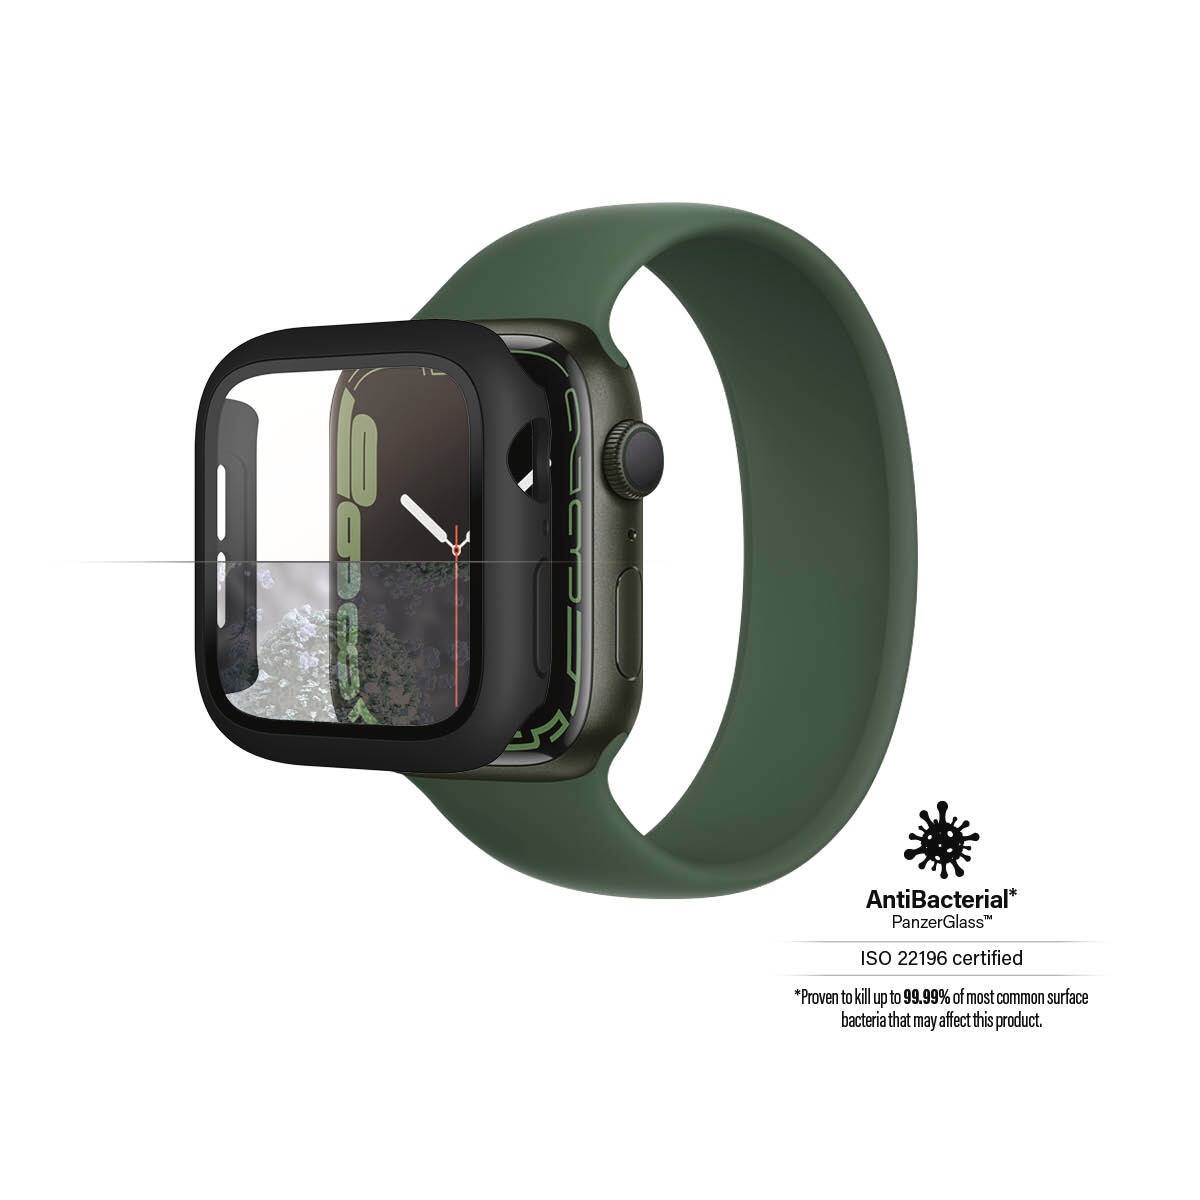 PanzerGlass Displayschutzglas »Full Body«, für Apple Watch 7 41mm-Apple Watch 8 41mm, passend für Apple Watch 7, 8 Series 41mm